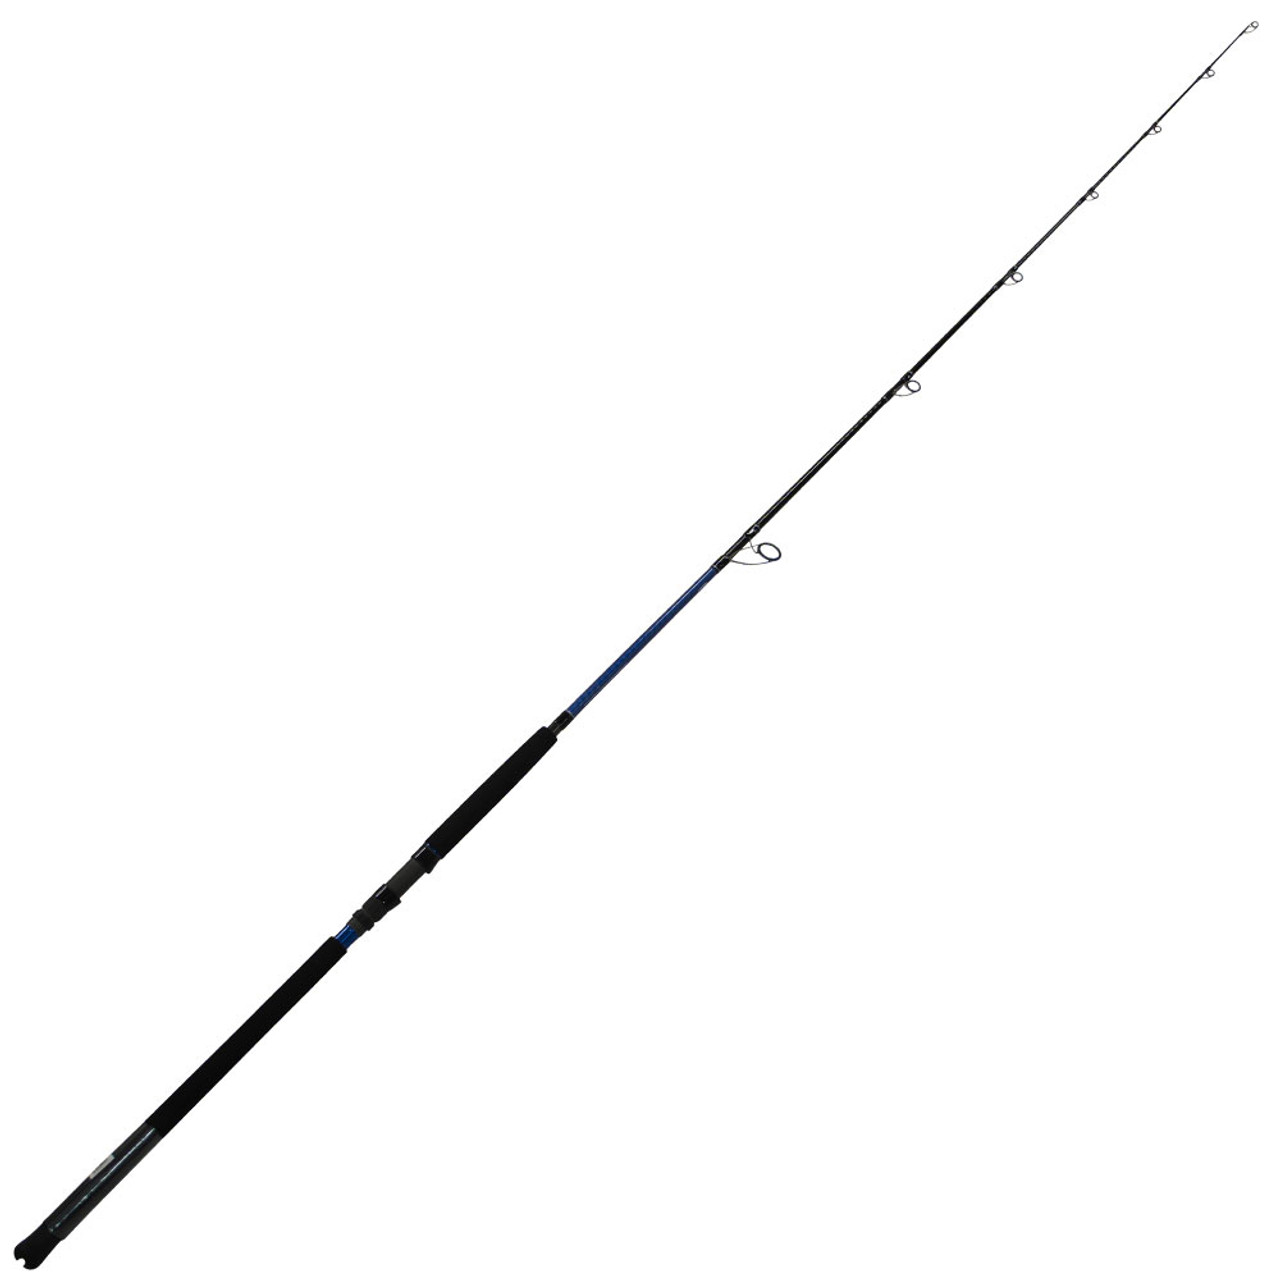 Daiwa Saltist X Rods, Fishing Rod